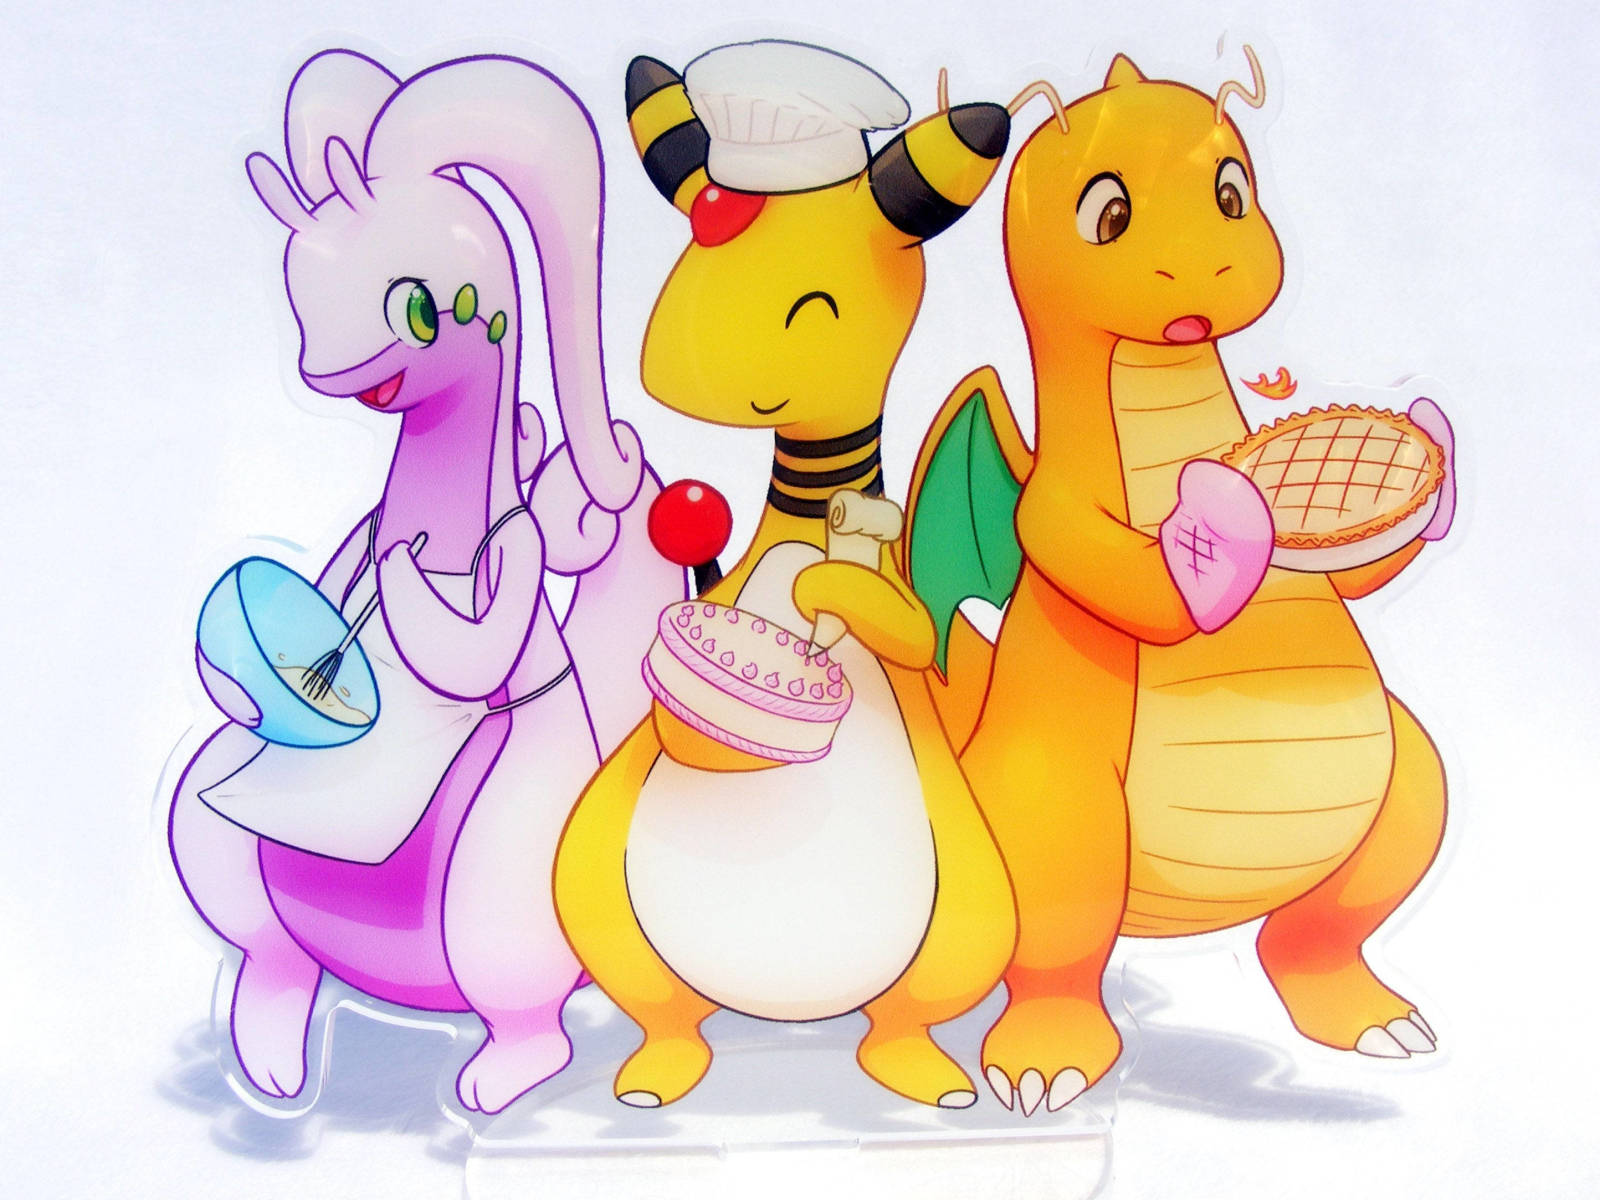 Pokemons with Cakes - Original image